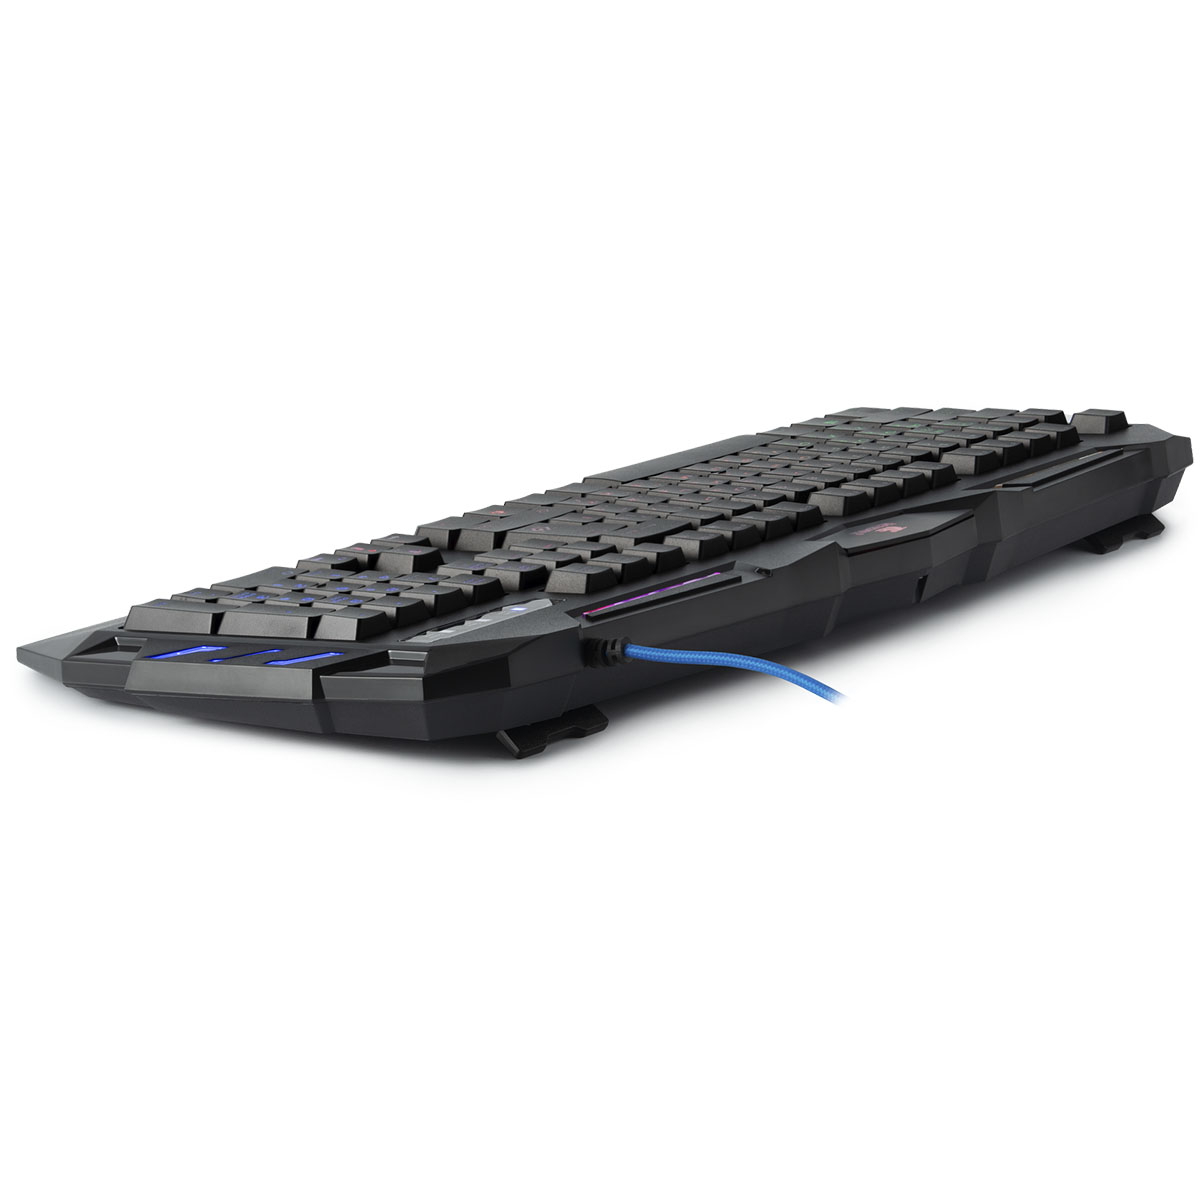 Игровая клавиатура Defender Werewolf GK-120DL, с подсветкой, цвет черный